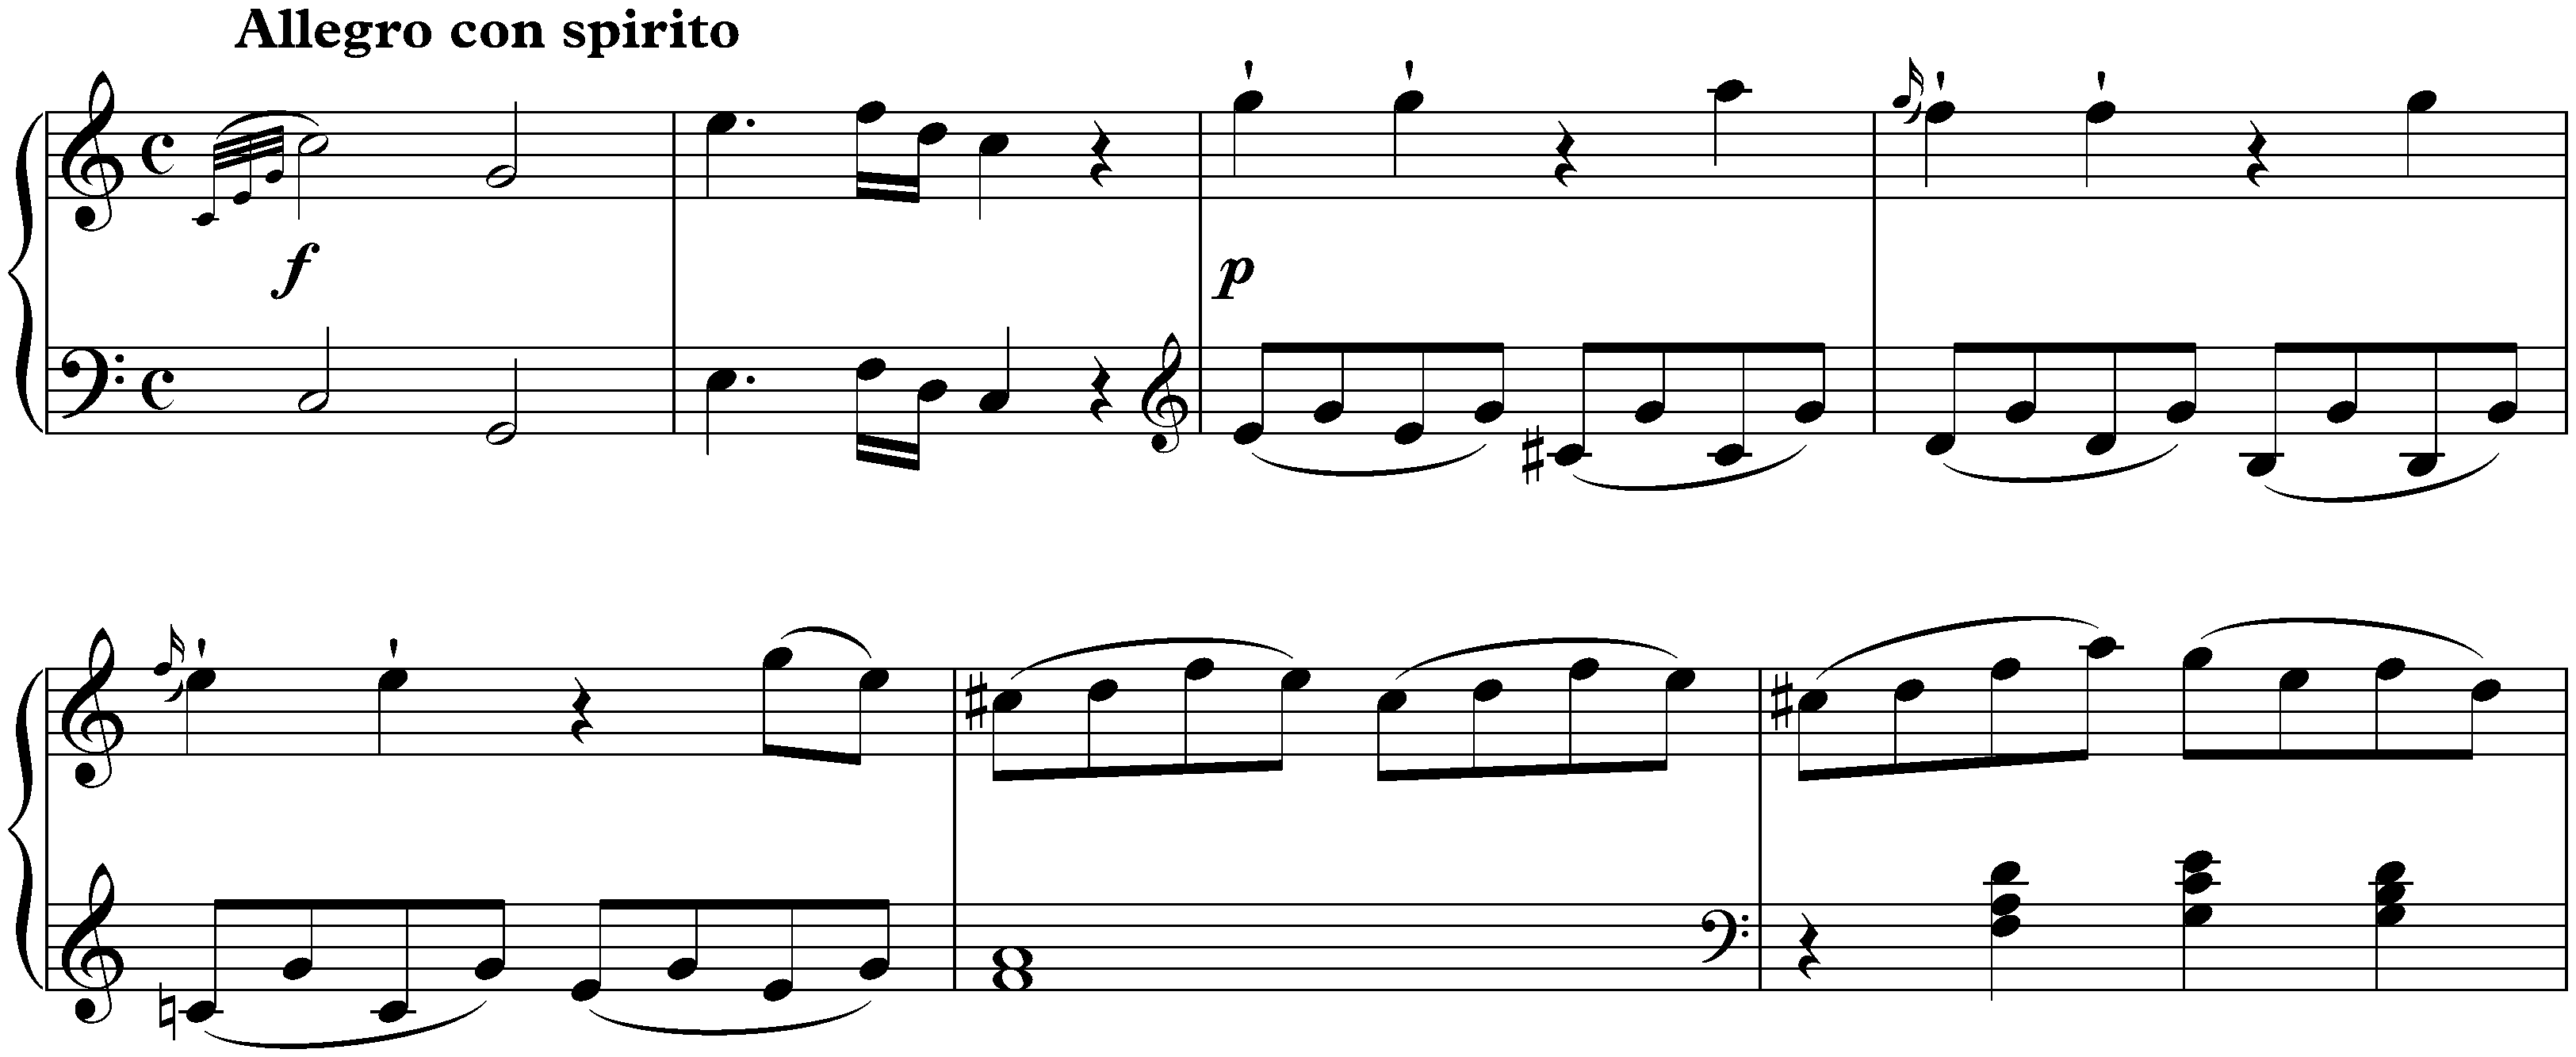 Sonata in C major, KV 309/284b; 1. Allegro con spirito